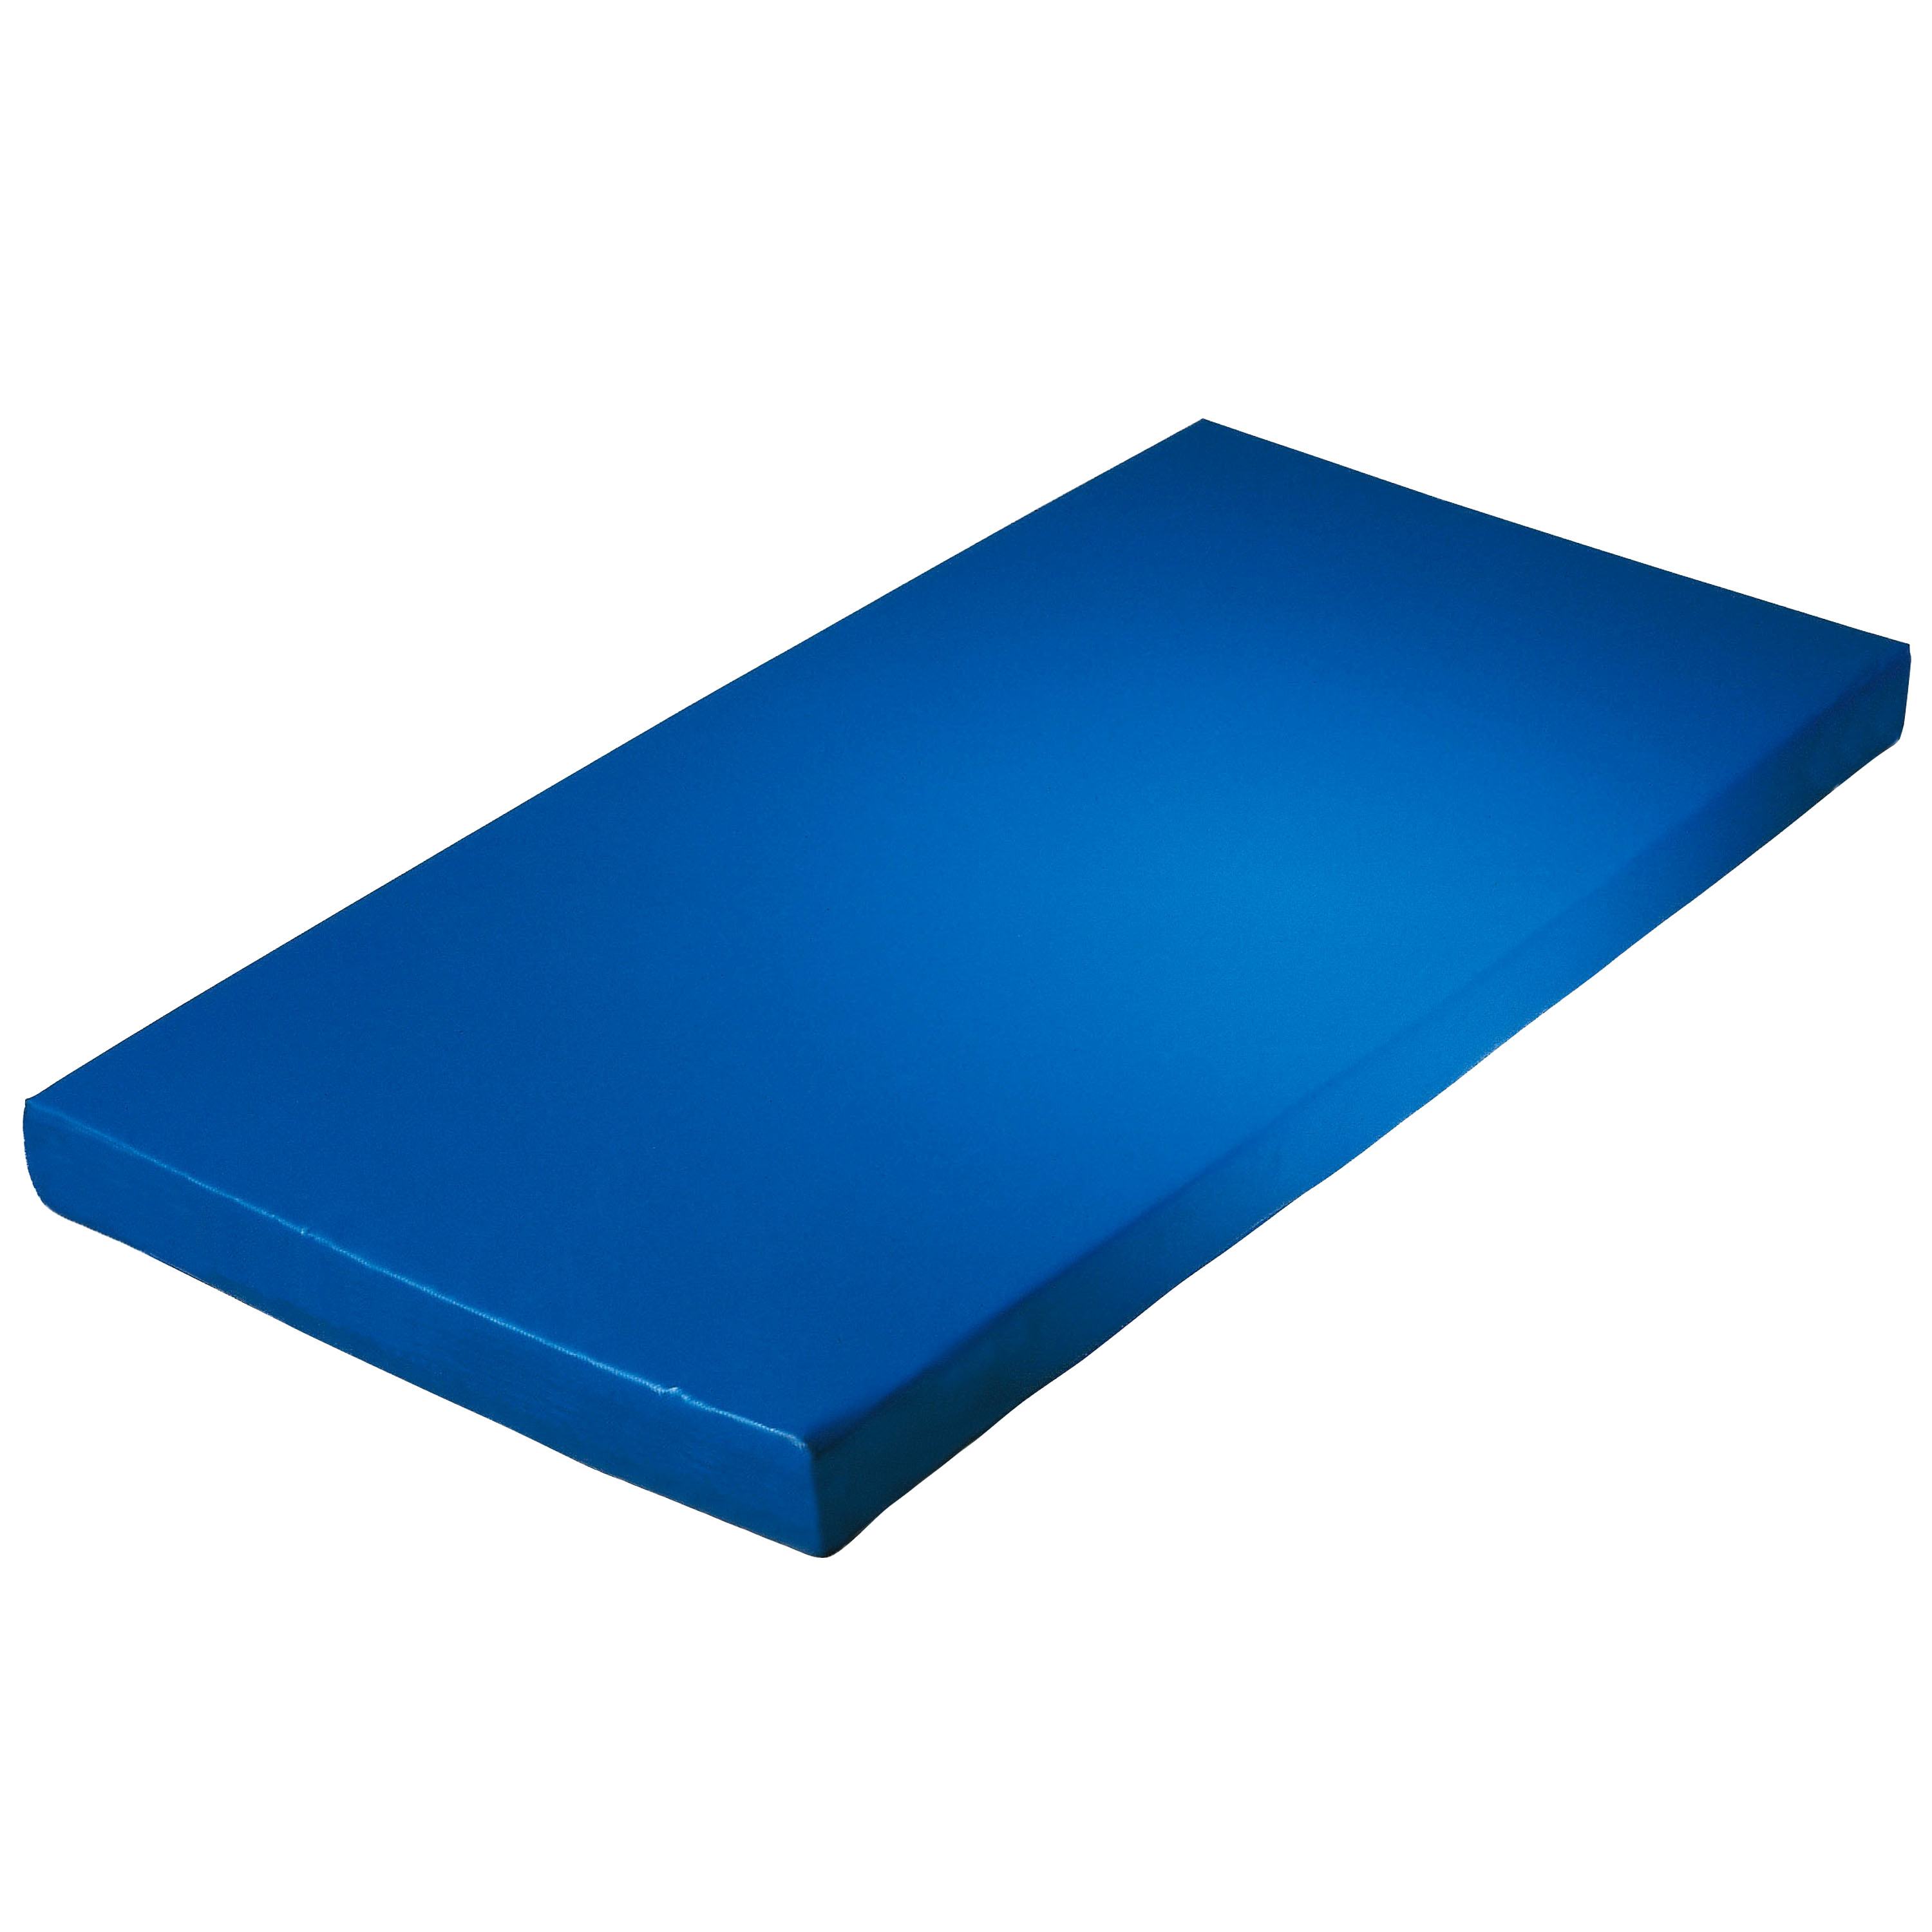 Super-Leichtturnmatte 200 x 100 x 6 cm, blau